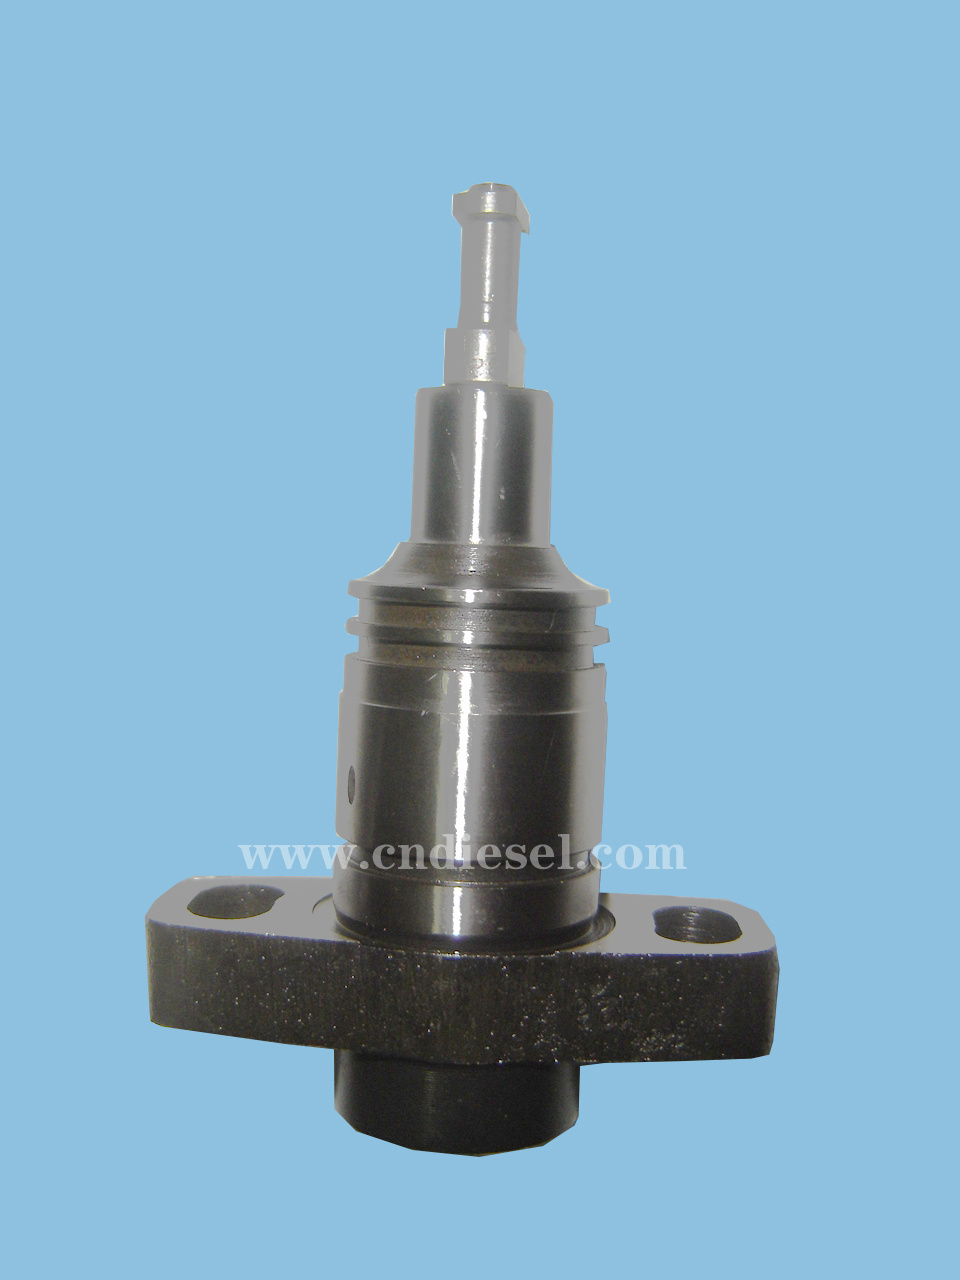 Pw Series 5971/Mg Diesel Fuel Pump Plunger 090150-5971